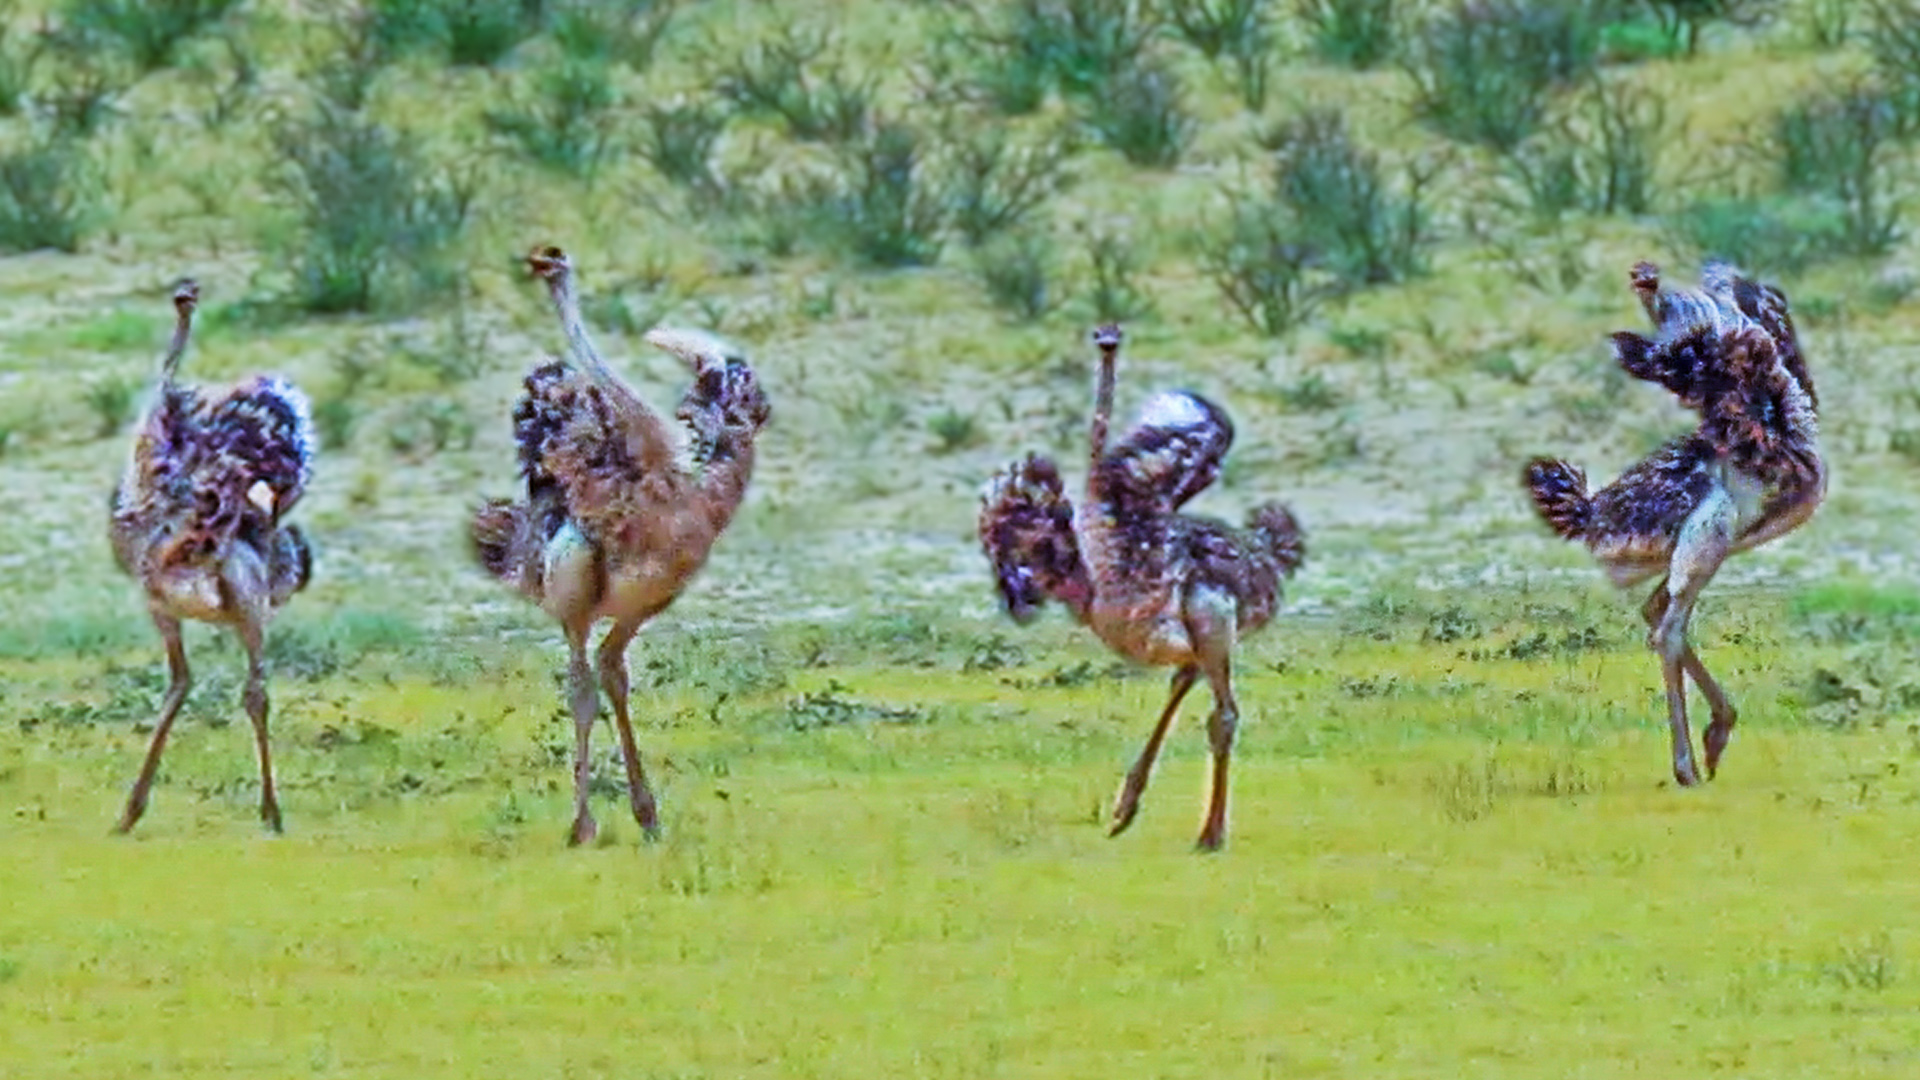 Ostriches Dance in Circles